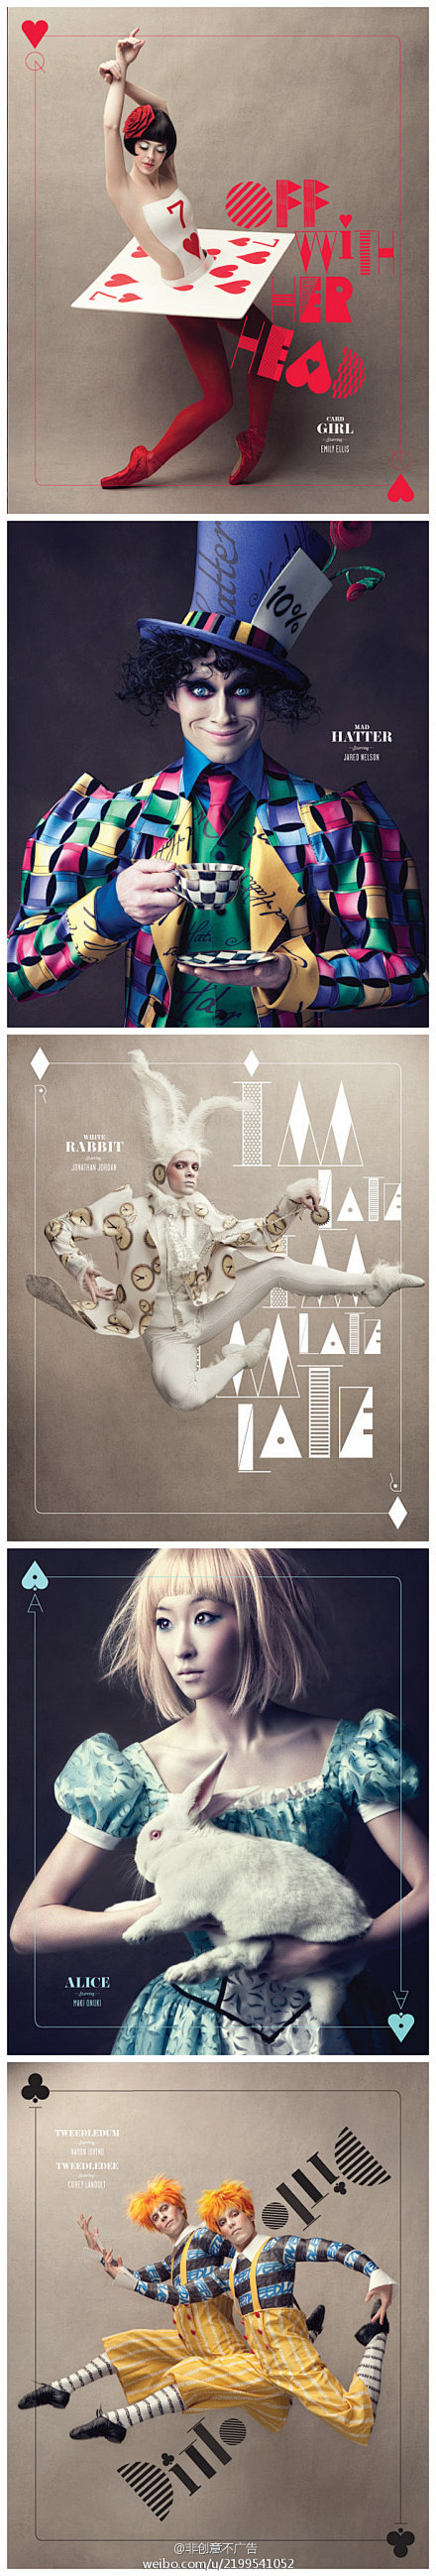 芭蕾舞版的爱丽丝梦游仙境宣传海报。